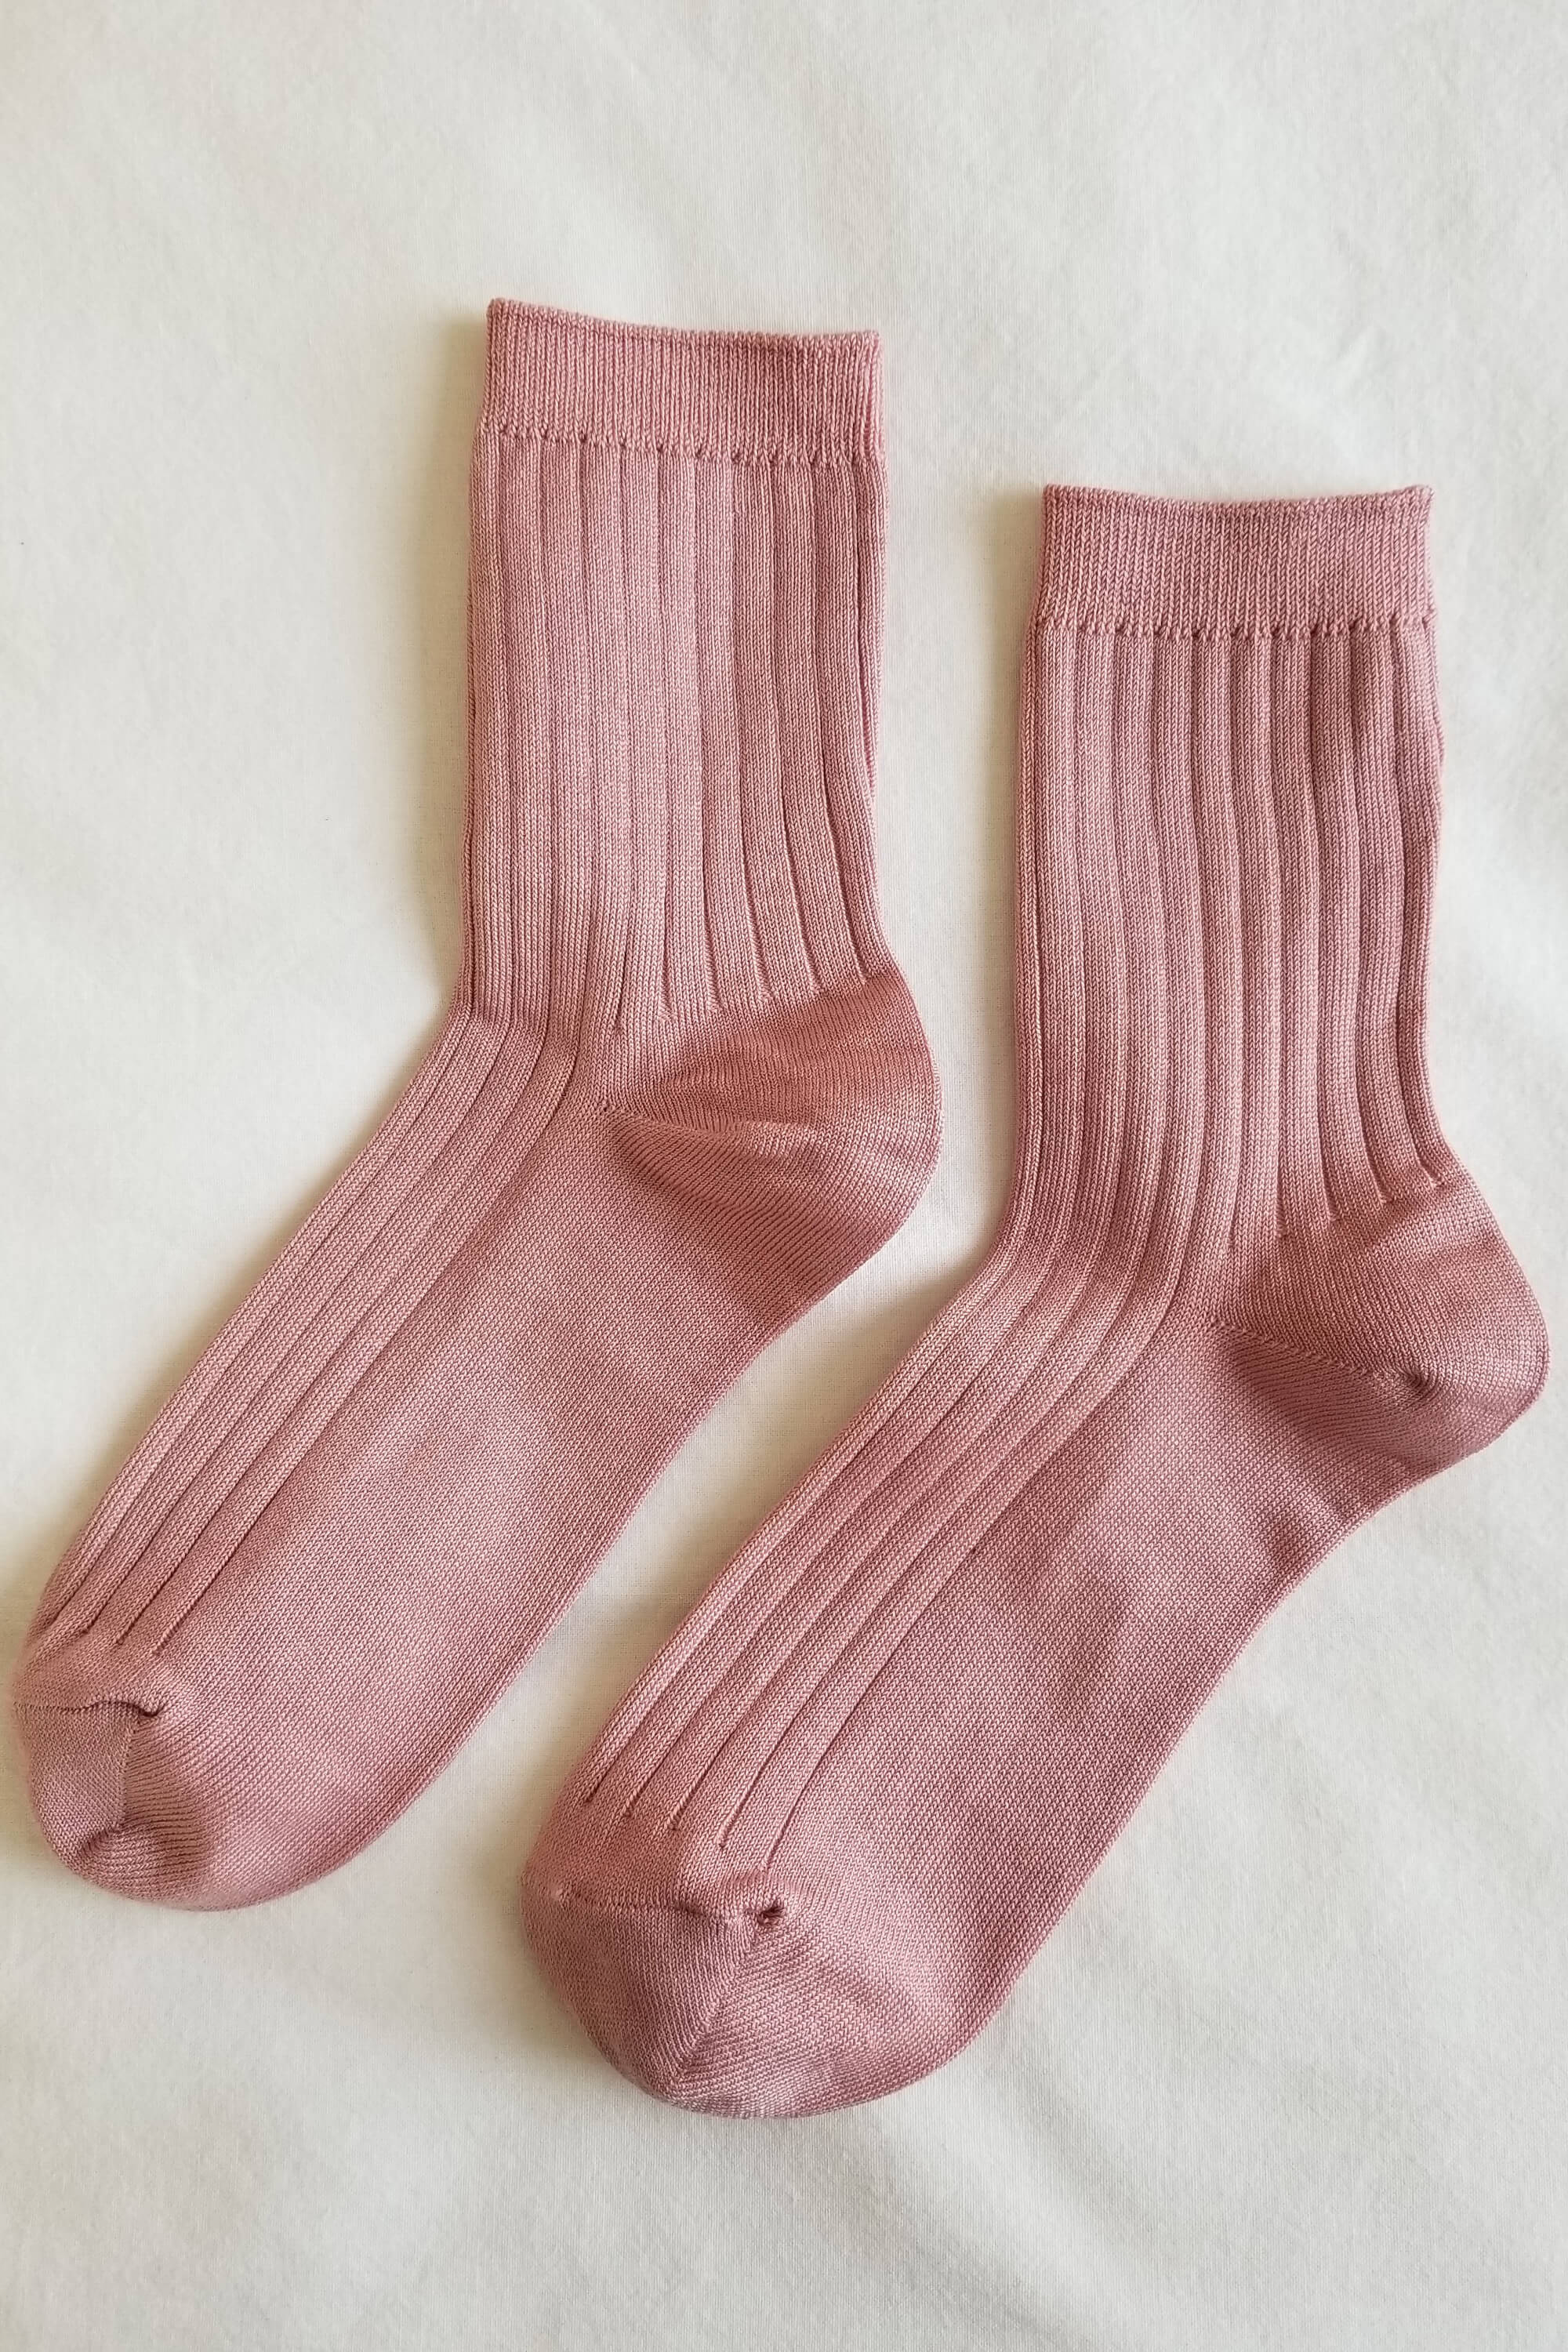 Her Socks | Desert Rose | by Le Bon Shoppe - Lifestory